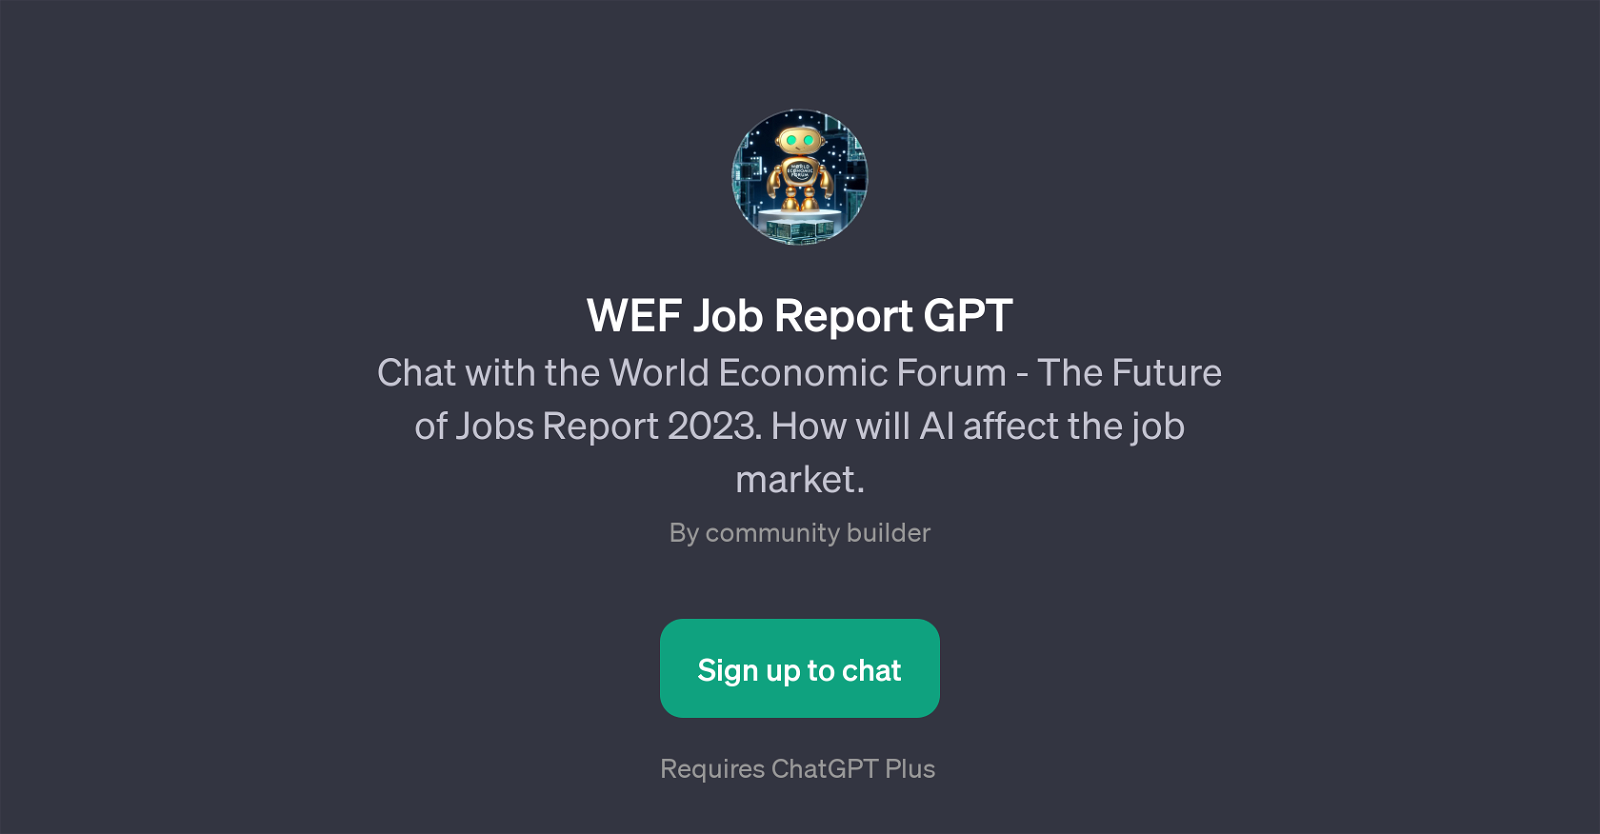 WEF Job Report GPT website